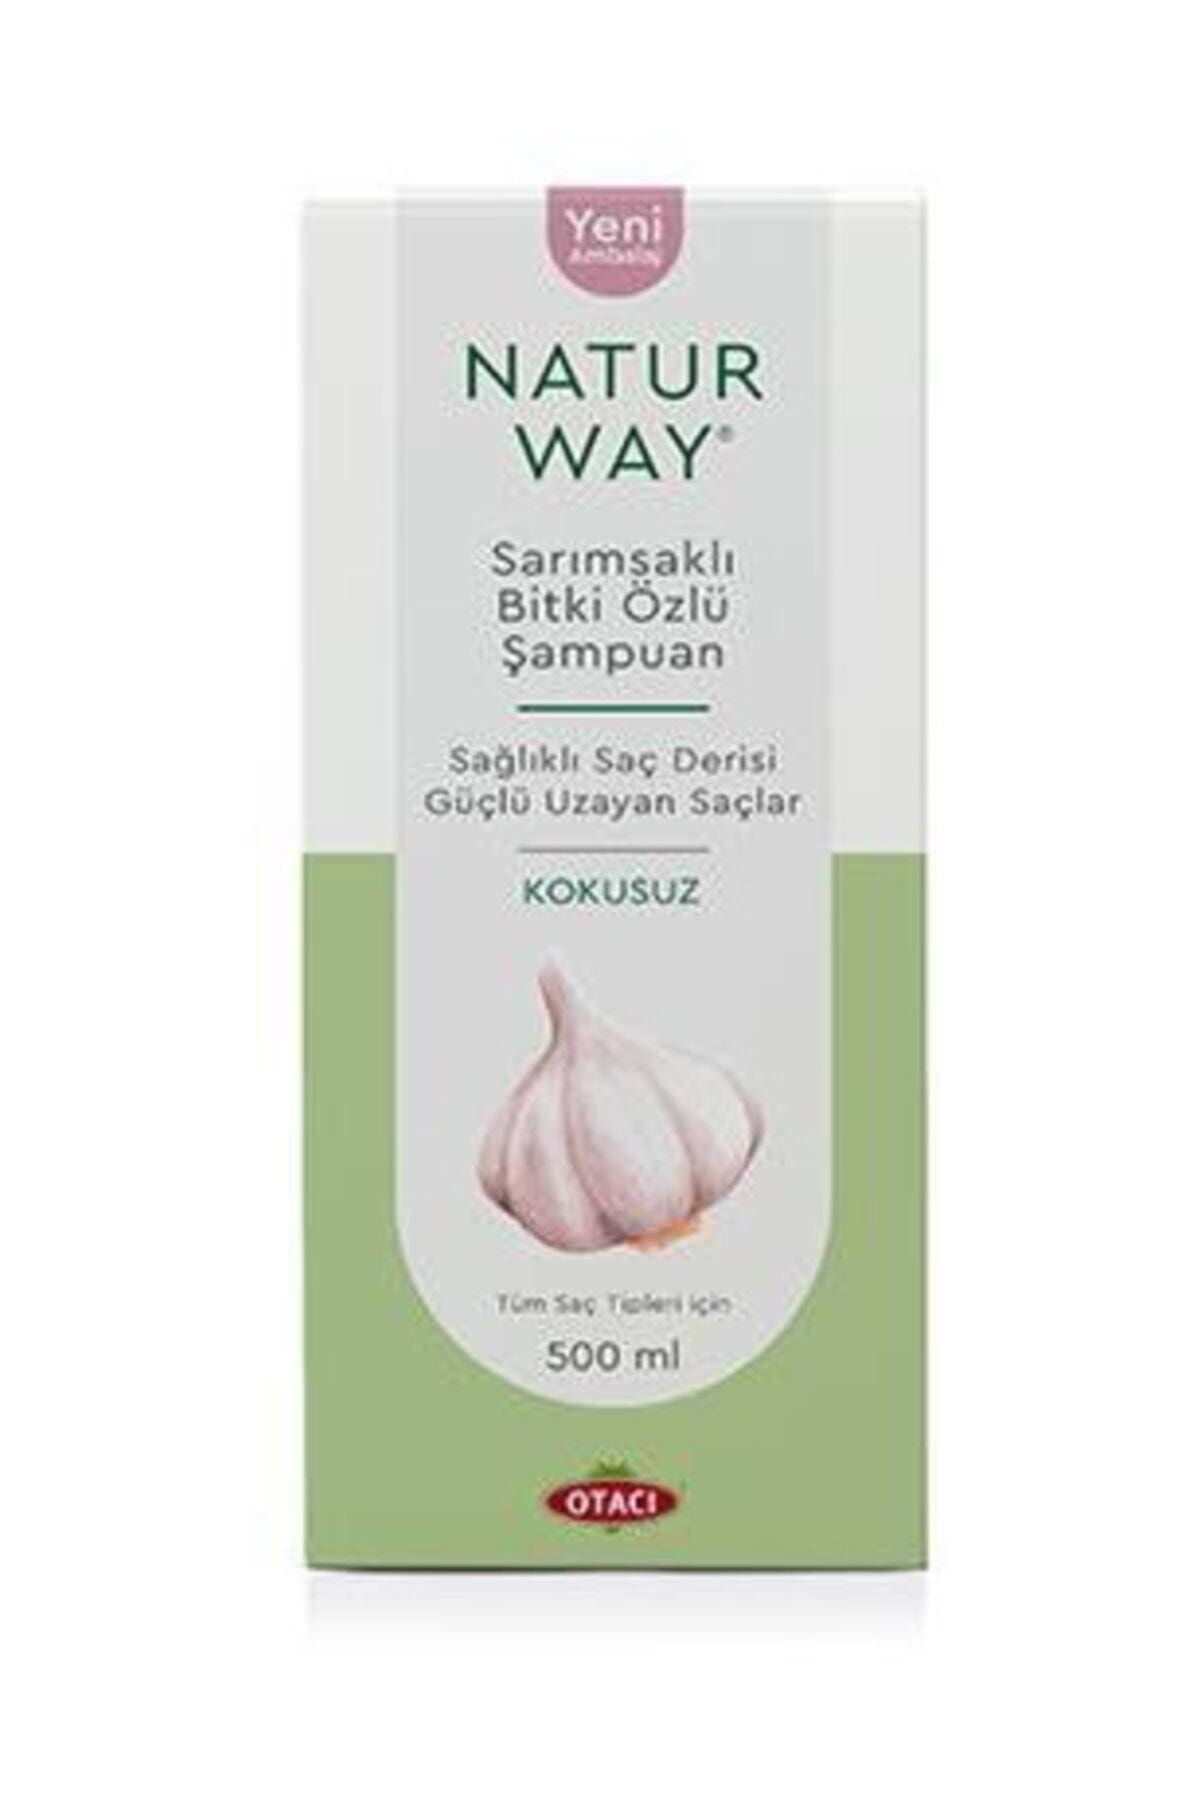 Otacı Naturway Sarımsaklı Bitki Özlü Şampuan 500ml + Saç Kremi 500ml